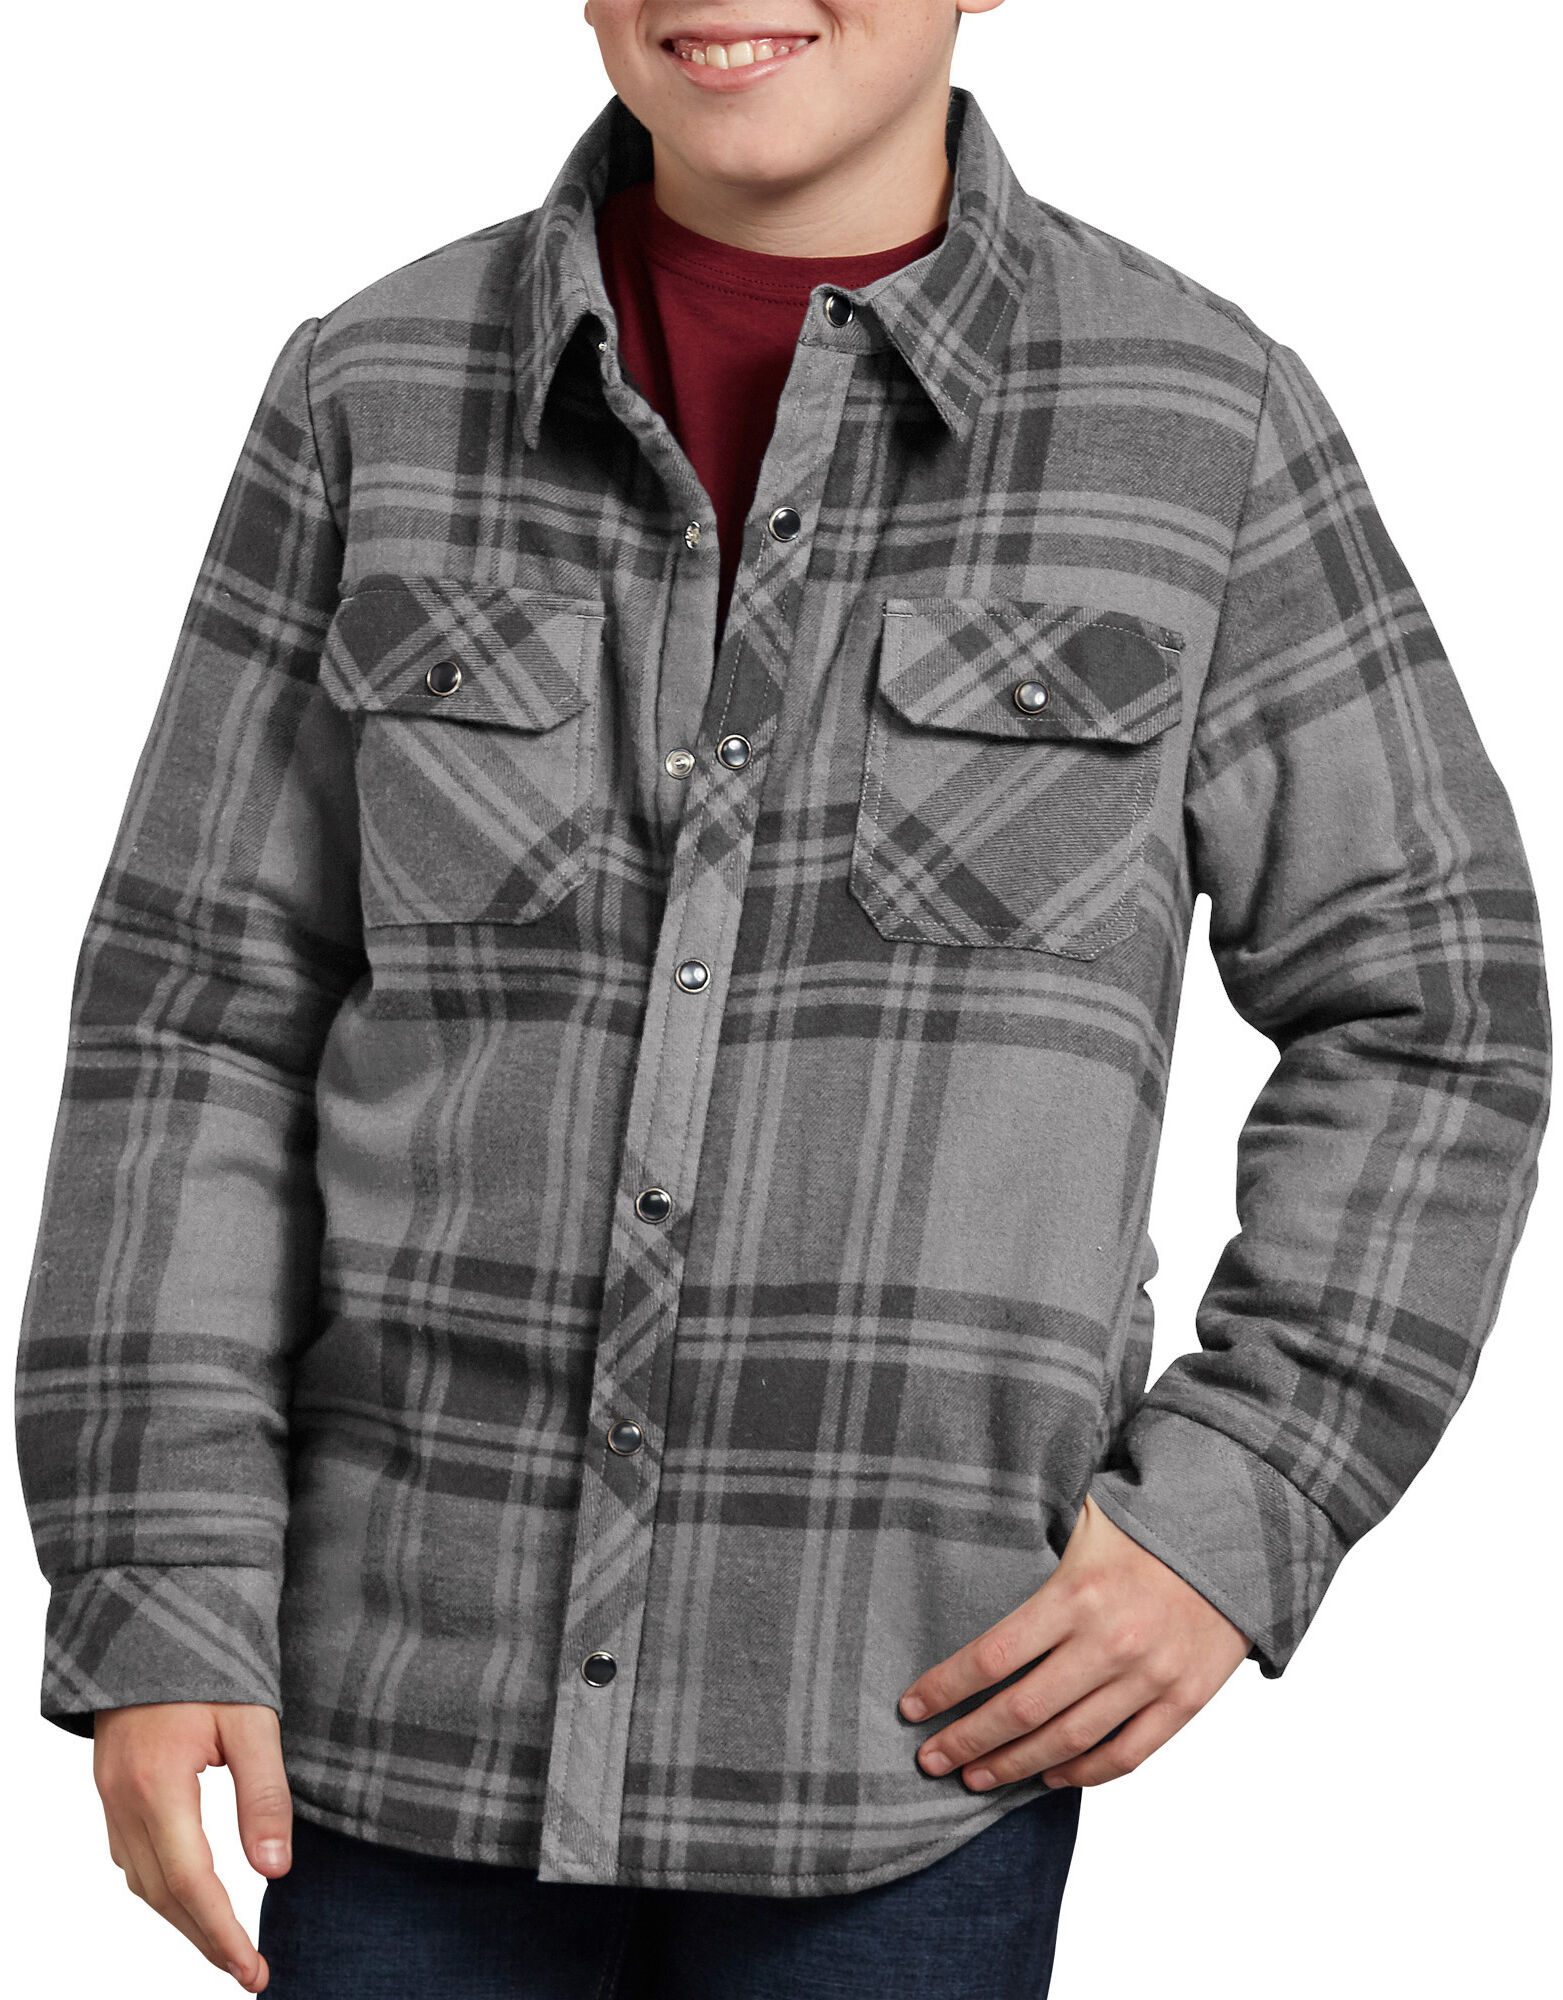 Boys' Flannel Shirt Jacket Gray Black Plaid | Dickies